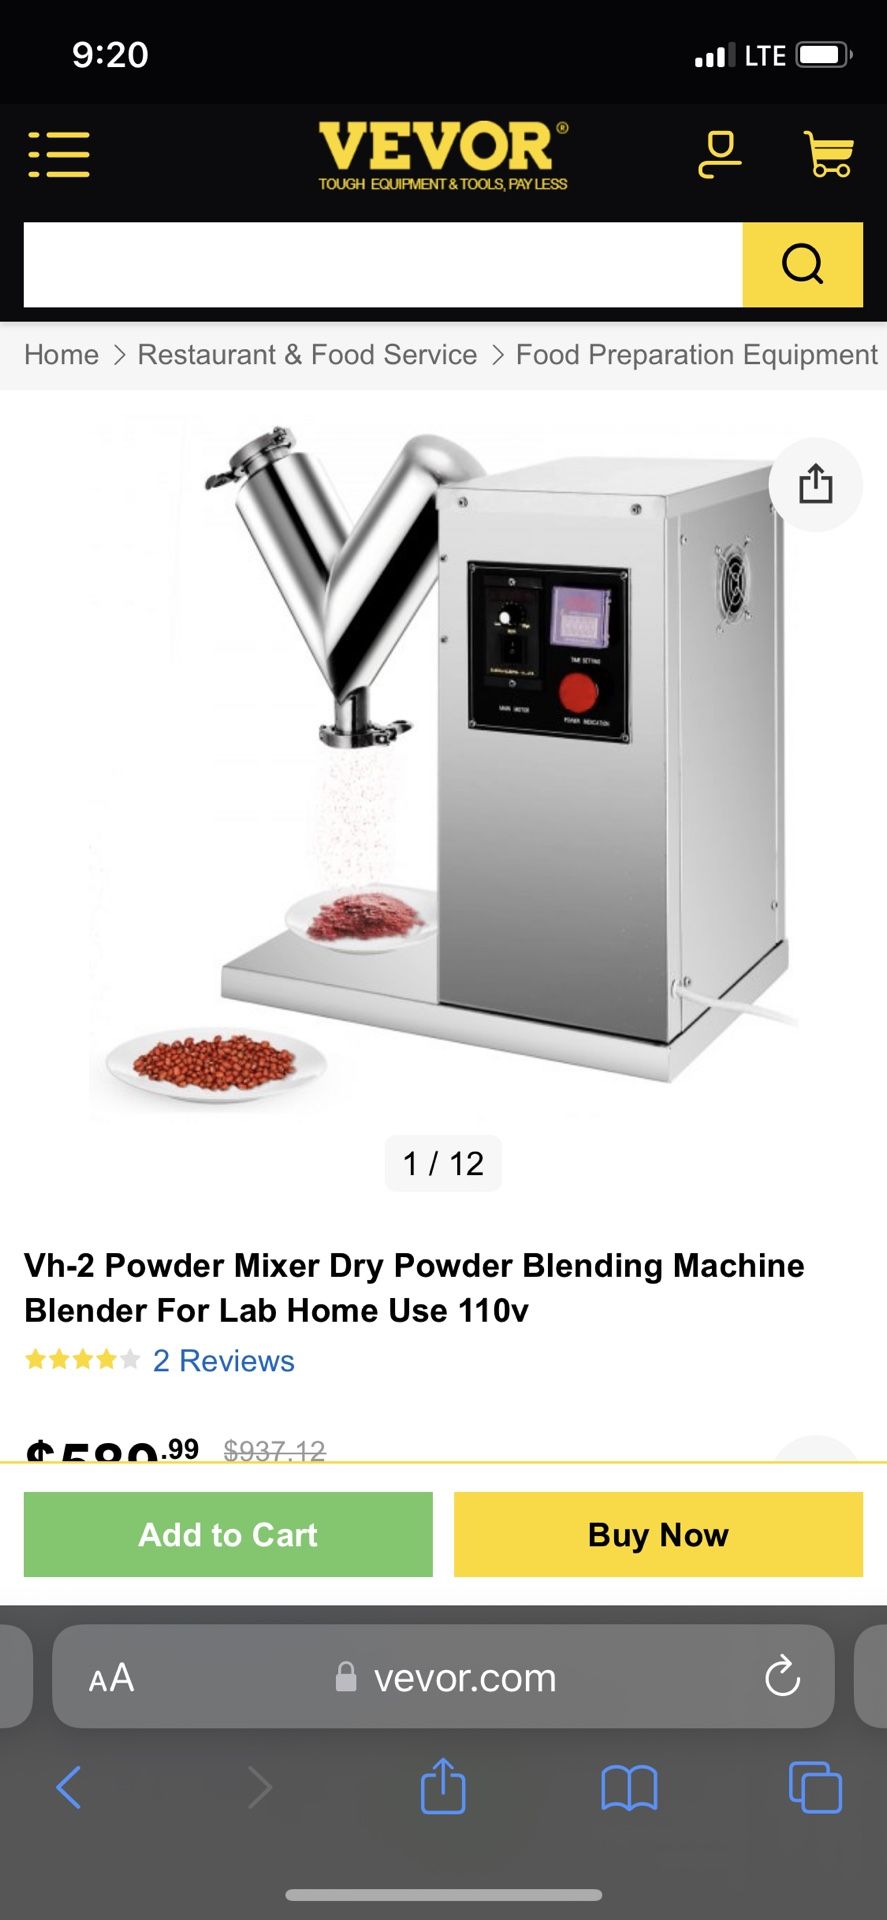 Vh-2 Powder Mixer Dry Powder Blending Machine Blender For Lab Home Use 110v